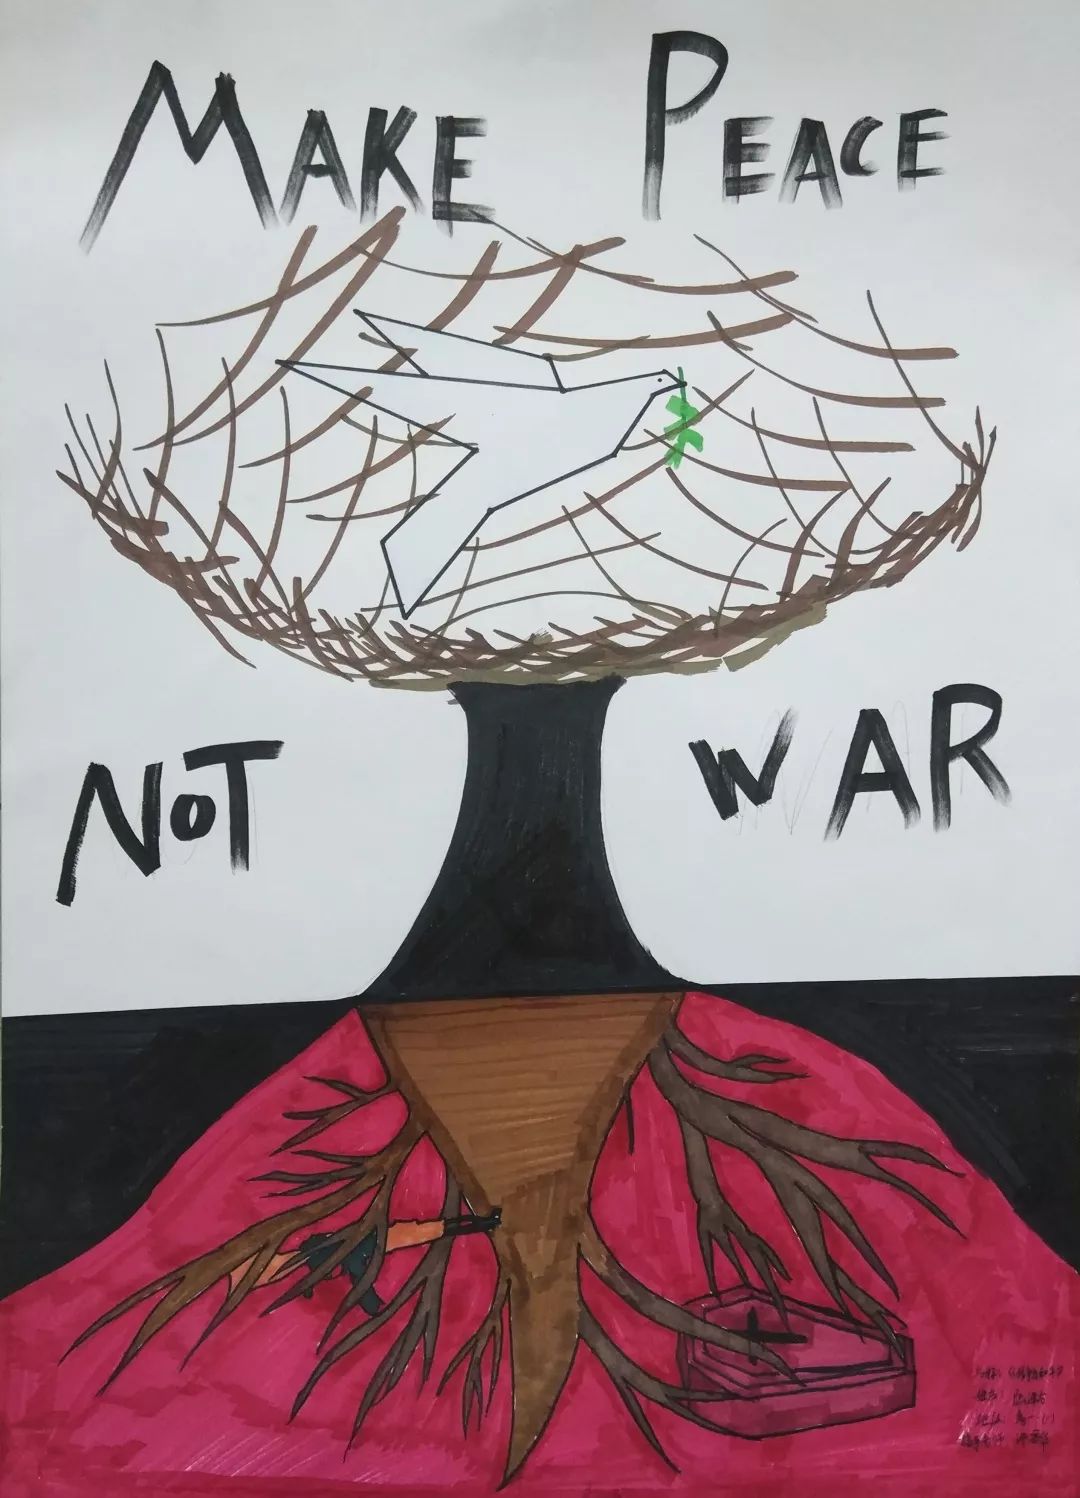 【聊聊美术那些事】(32)战争与和平 ——许昌华老师带